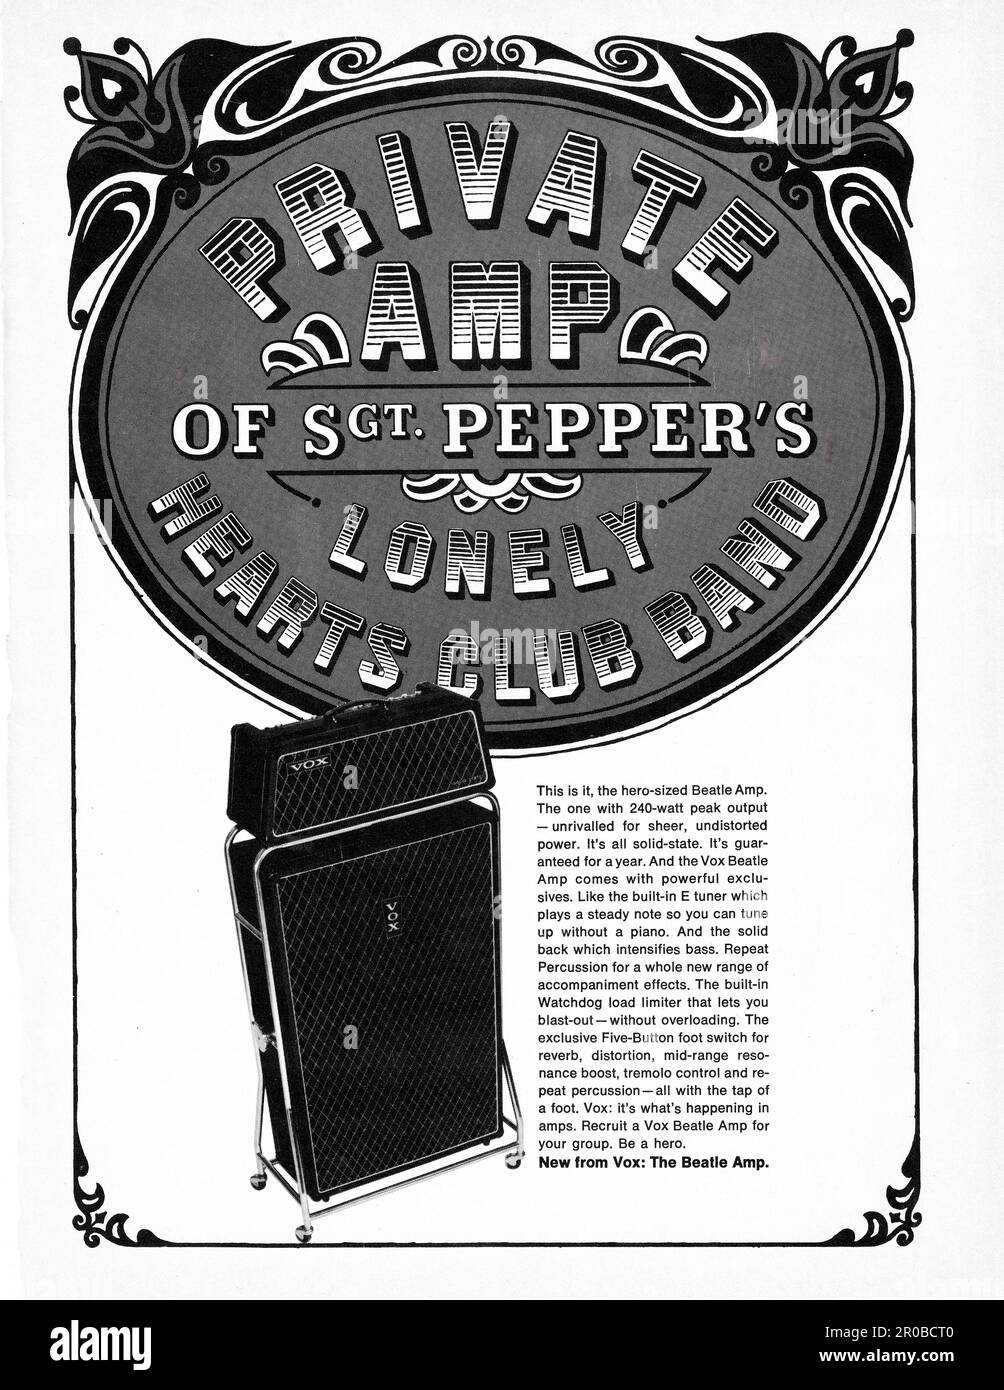 Une publicité pour le héros taille 240 watts Vox Beatle amp. Il s'appelle l'ampli privé du Sgt. Pepper's Lonely Hearts Club. Une publicité pleine page dans un magazine de musique de 1967. Banque D'Images